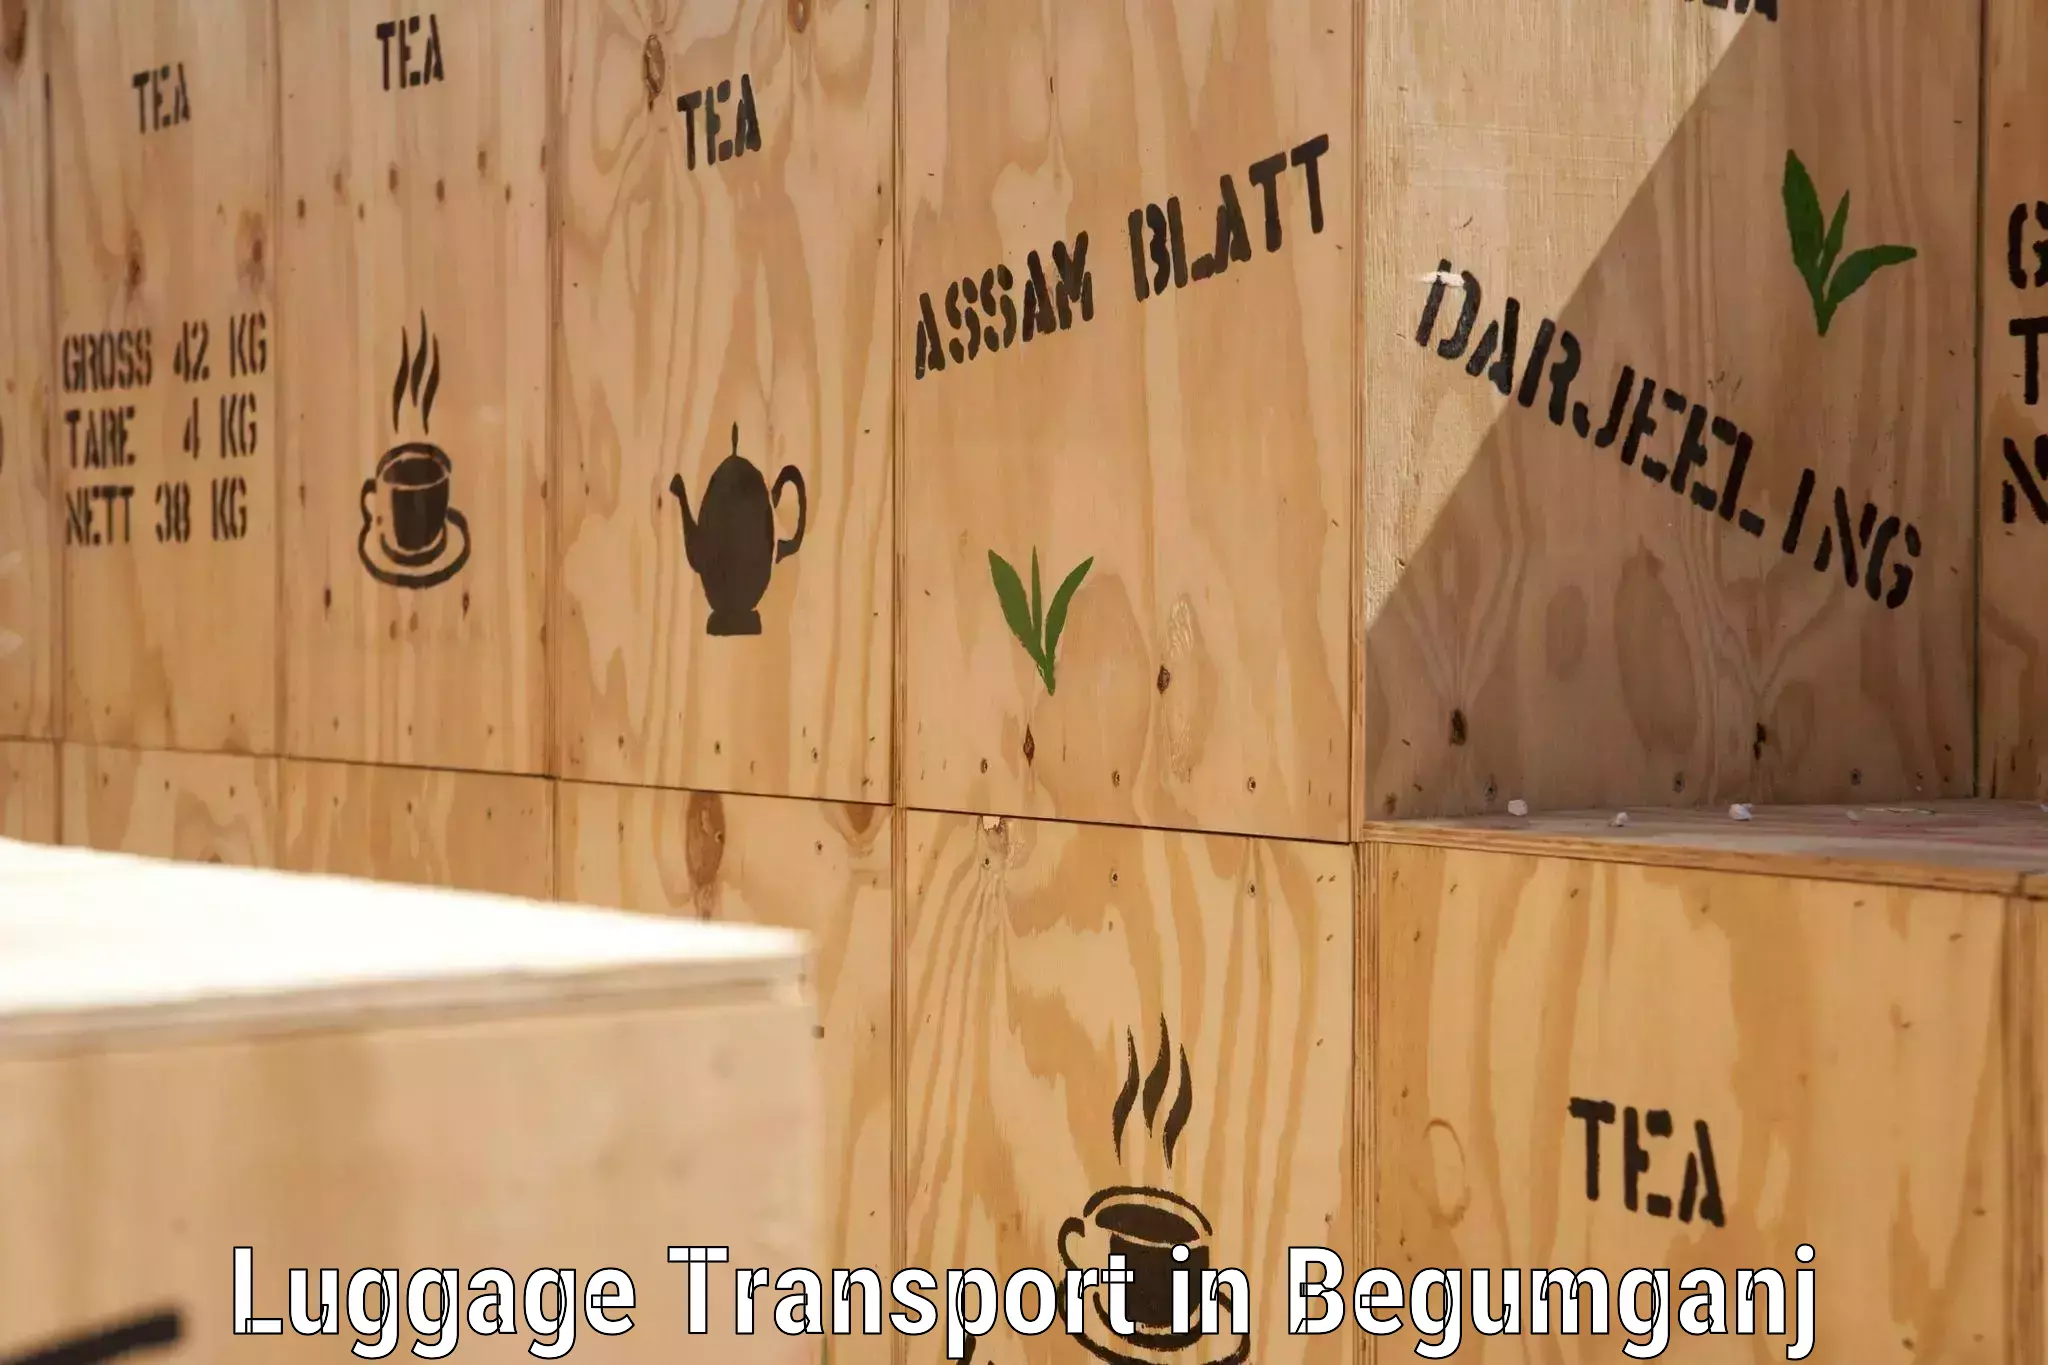 Luggage transfer service in Begumganj